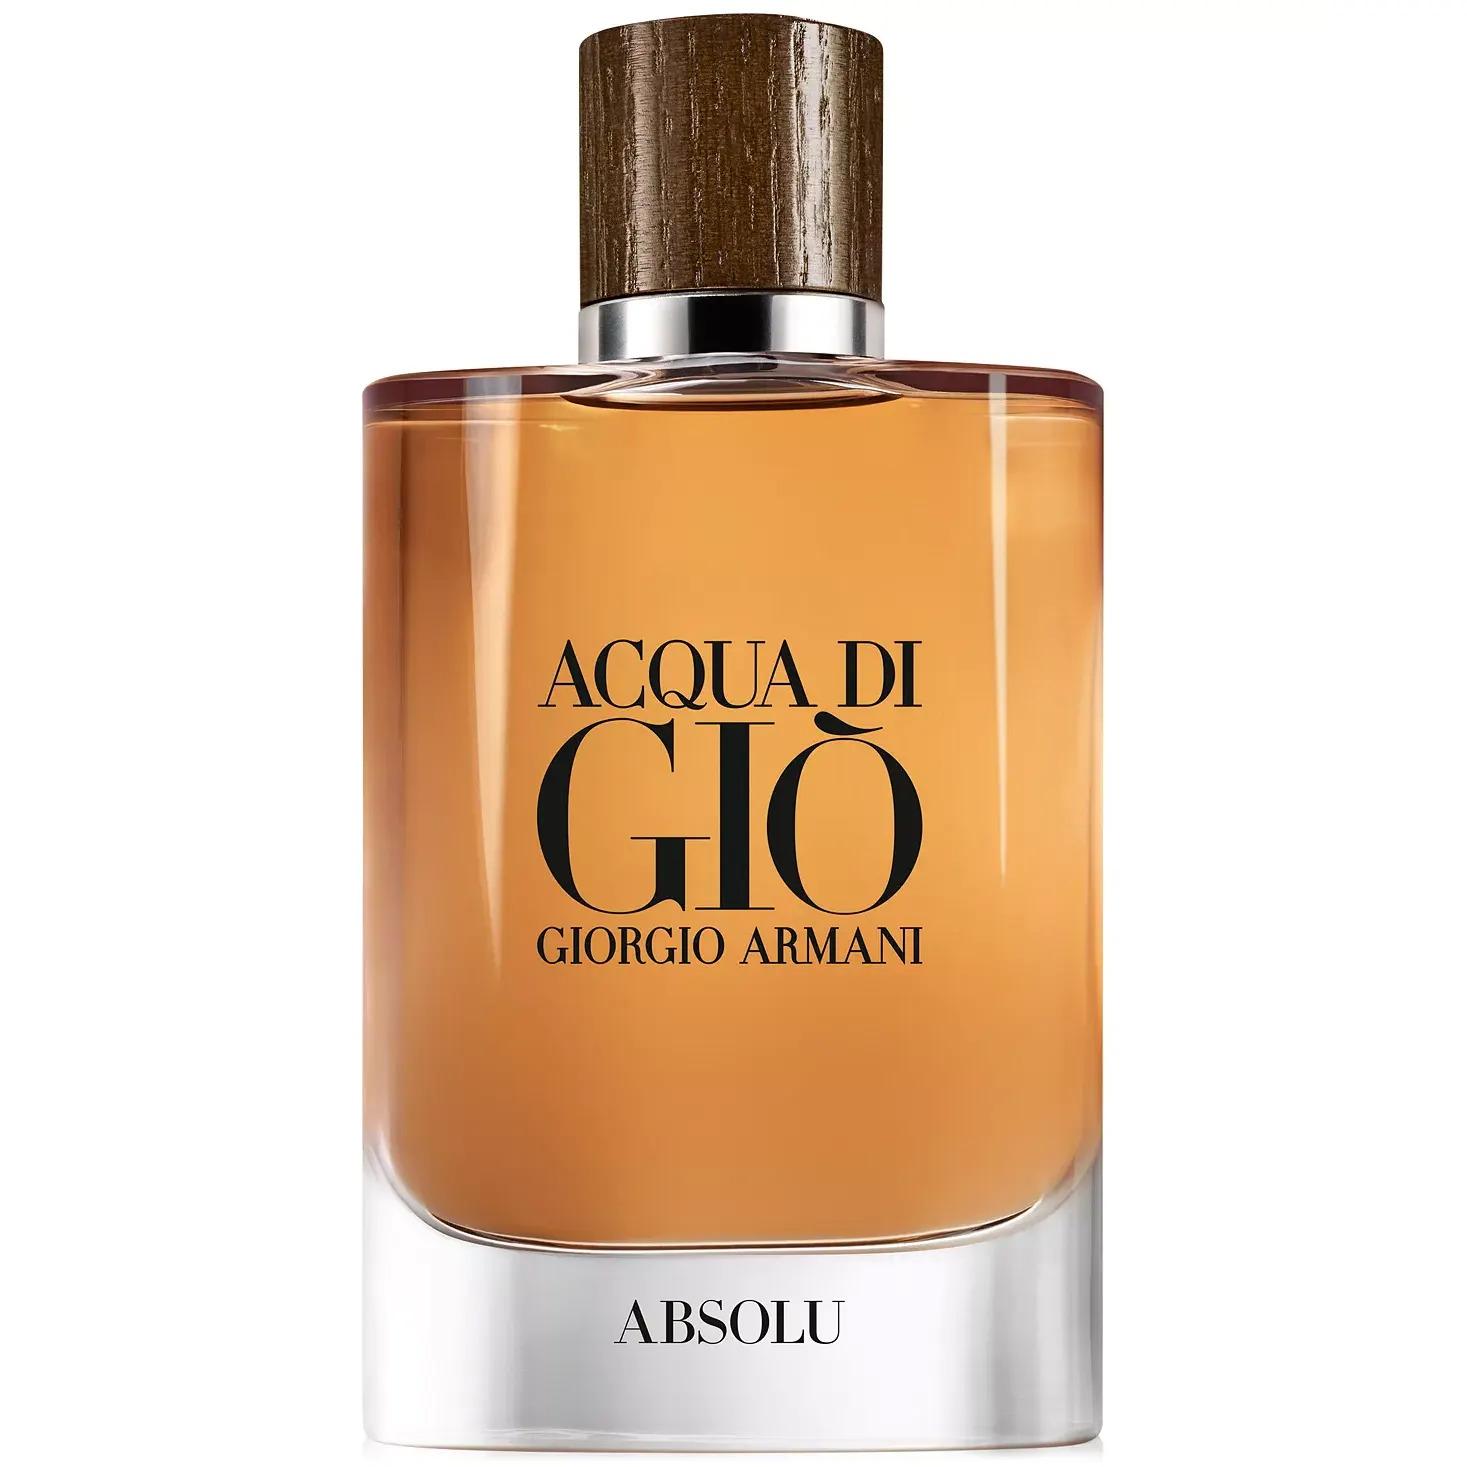 Giorgio Armani Acqua di Gio Absolu Eau de Parfum Spray 4.2oz for $59.50 Shipped